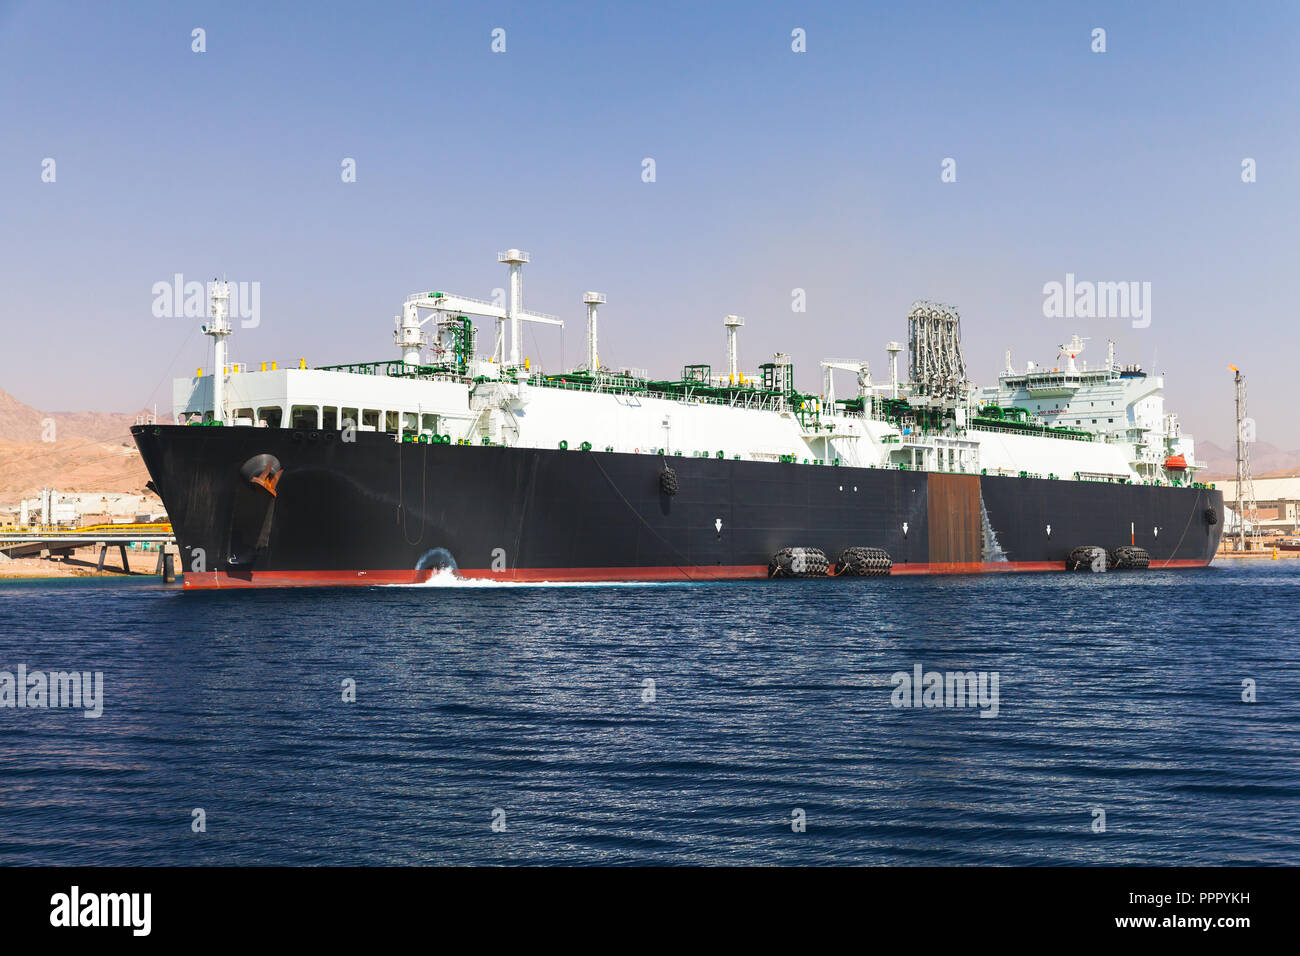 Loading of huge oil tanker in new port of Aqaba, Jordan Stock Photo